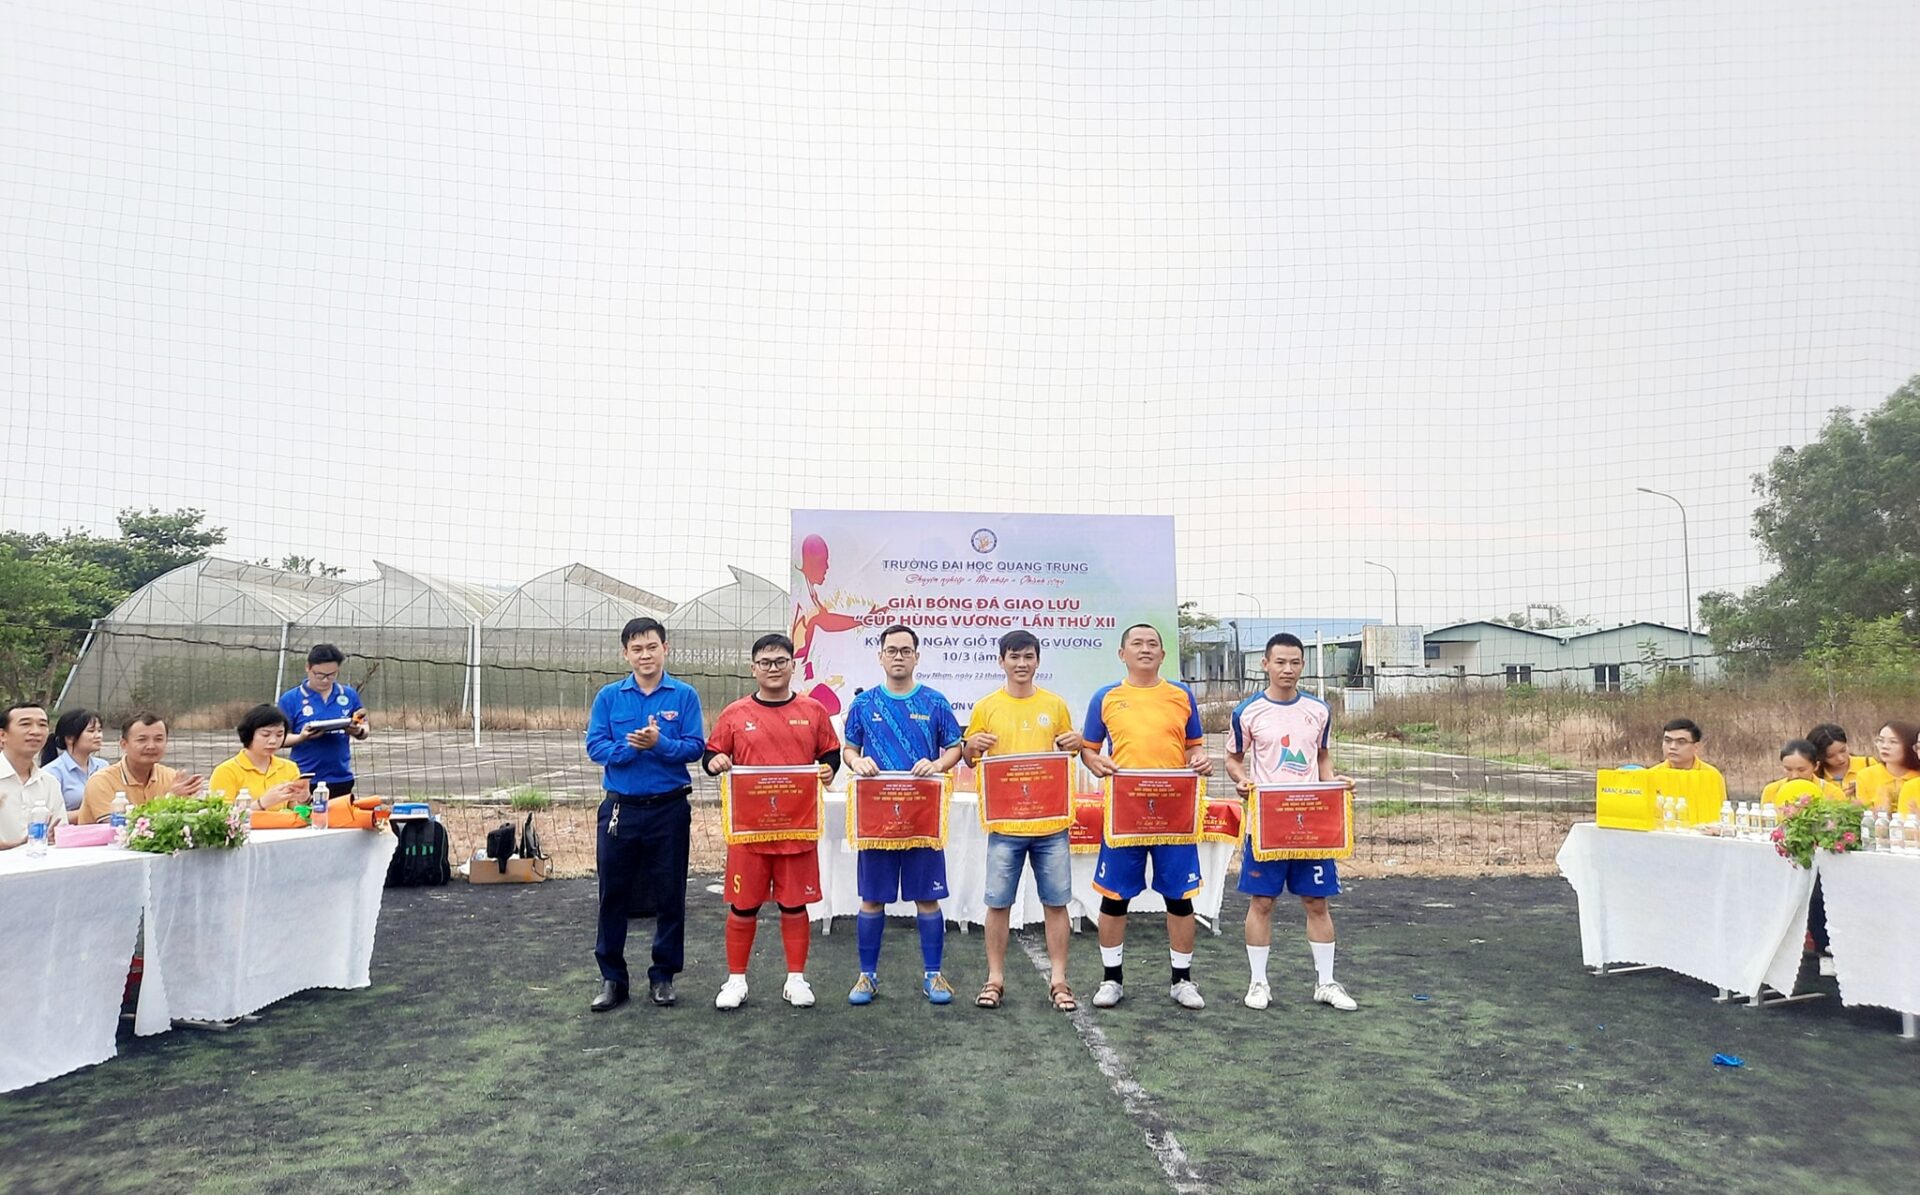 Khai mạc giải bóng đá giao lưu "Cúp Hùng Vương" lần thứ XII